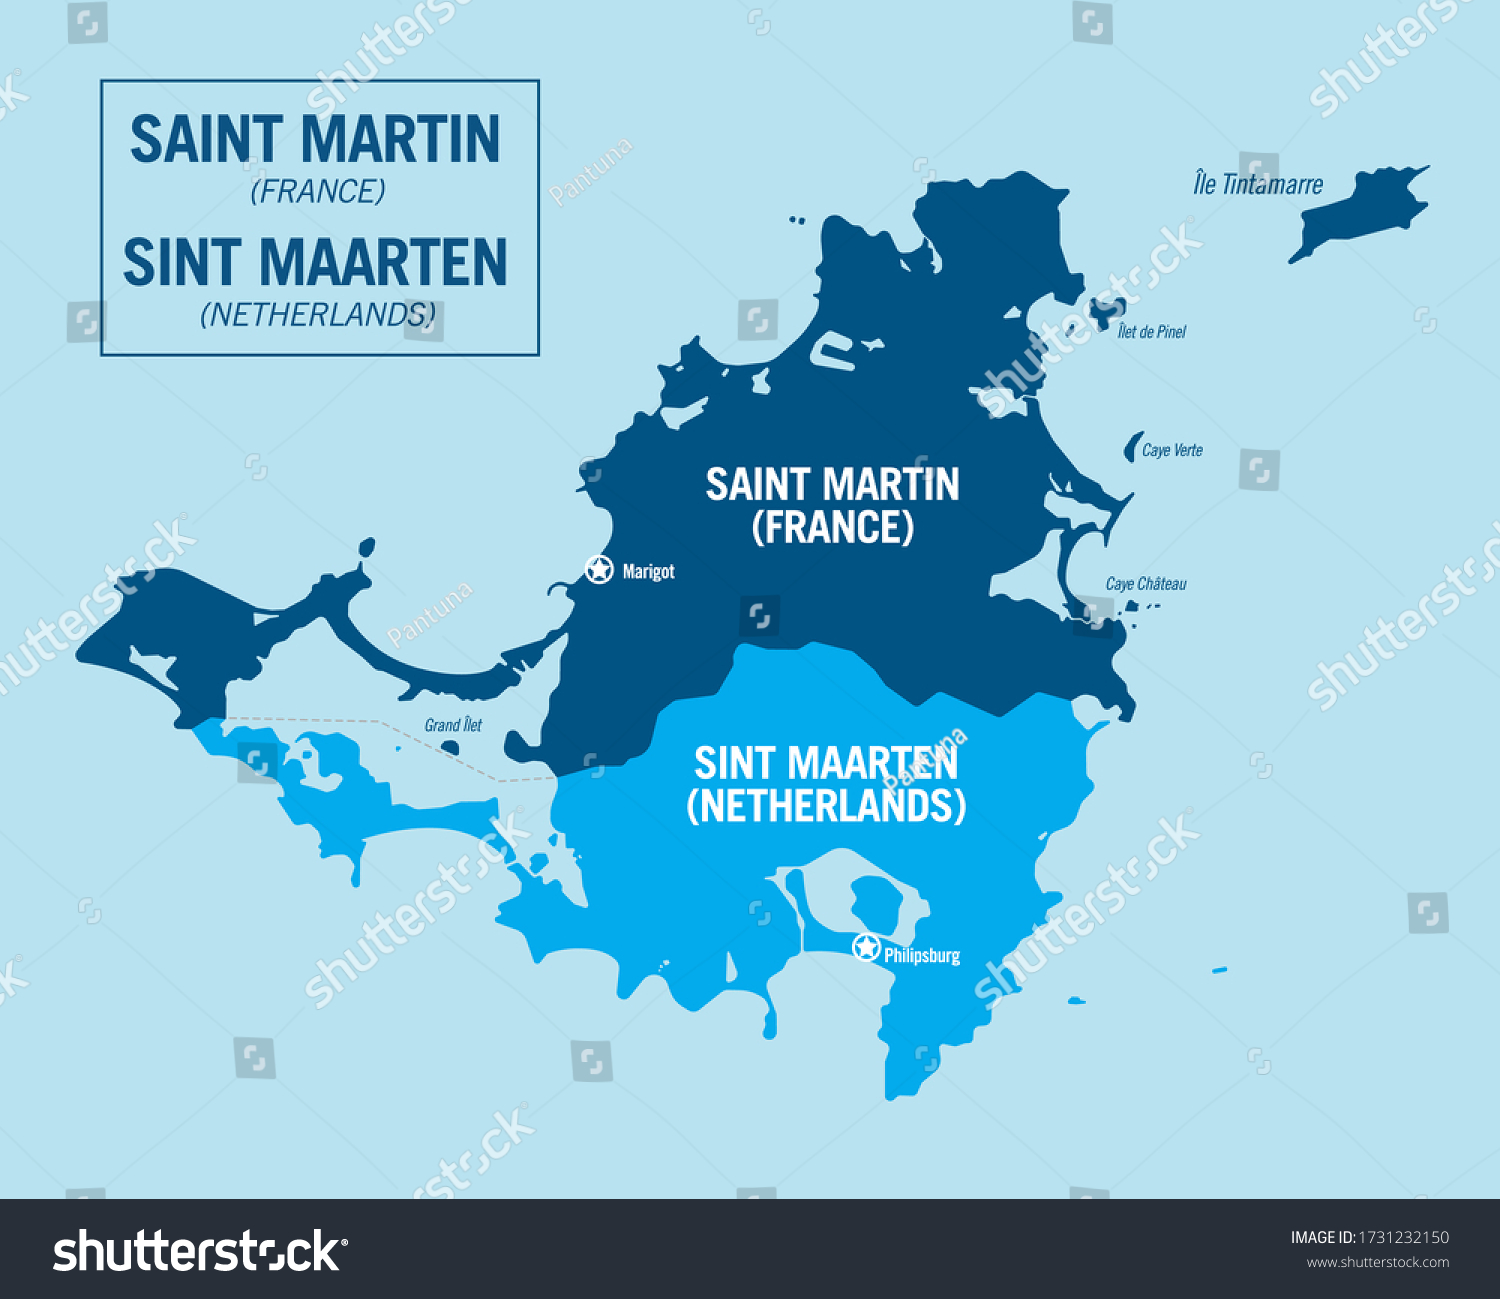 Map Of Sint Maarten Island Saint Martin Island France Sint Maarten Stock Vector (Royalty Free)  1731232150 | Shutterstock